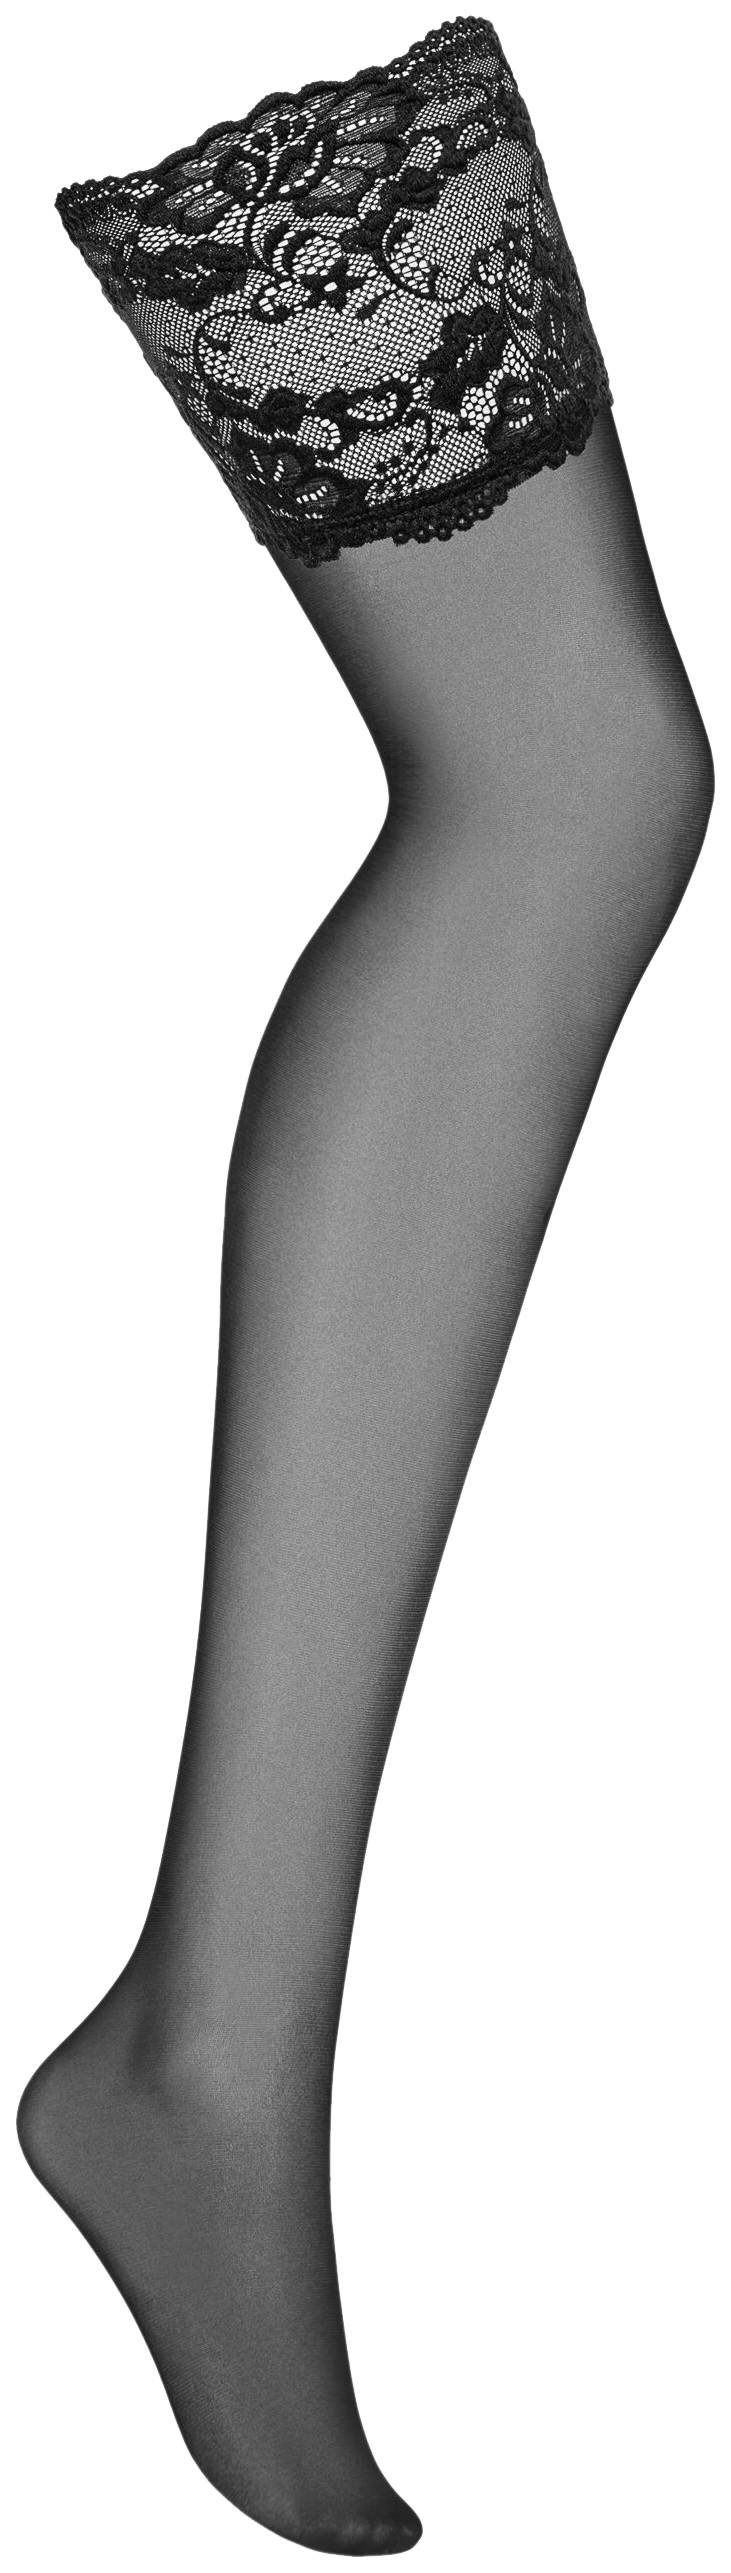 фото Obsessive чулки с широкой кружевной резинкой 810 stockings черные l/xl